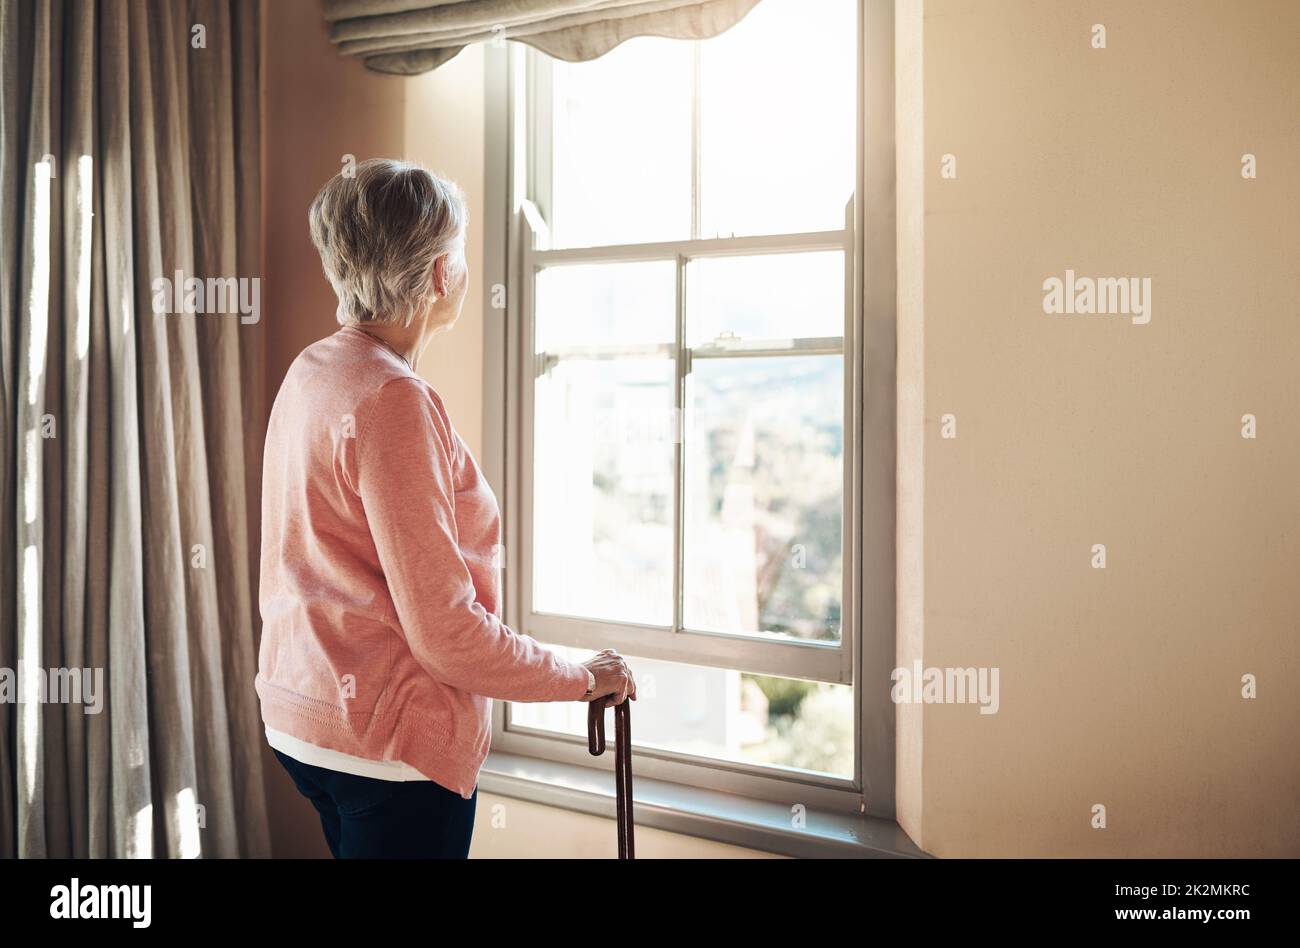 Wann wurden die Tage so grau. Aufnahme einer älteren Frau mit einem Stock, der zu Hause nachdenklich aus dem Fenster schaute. Stockfoto